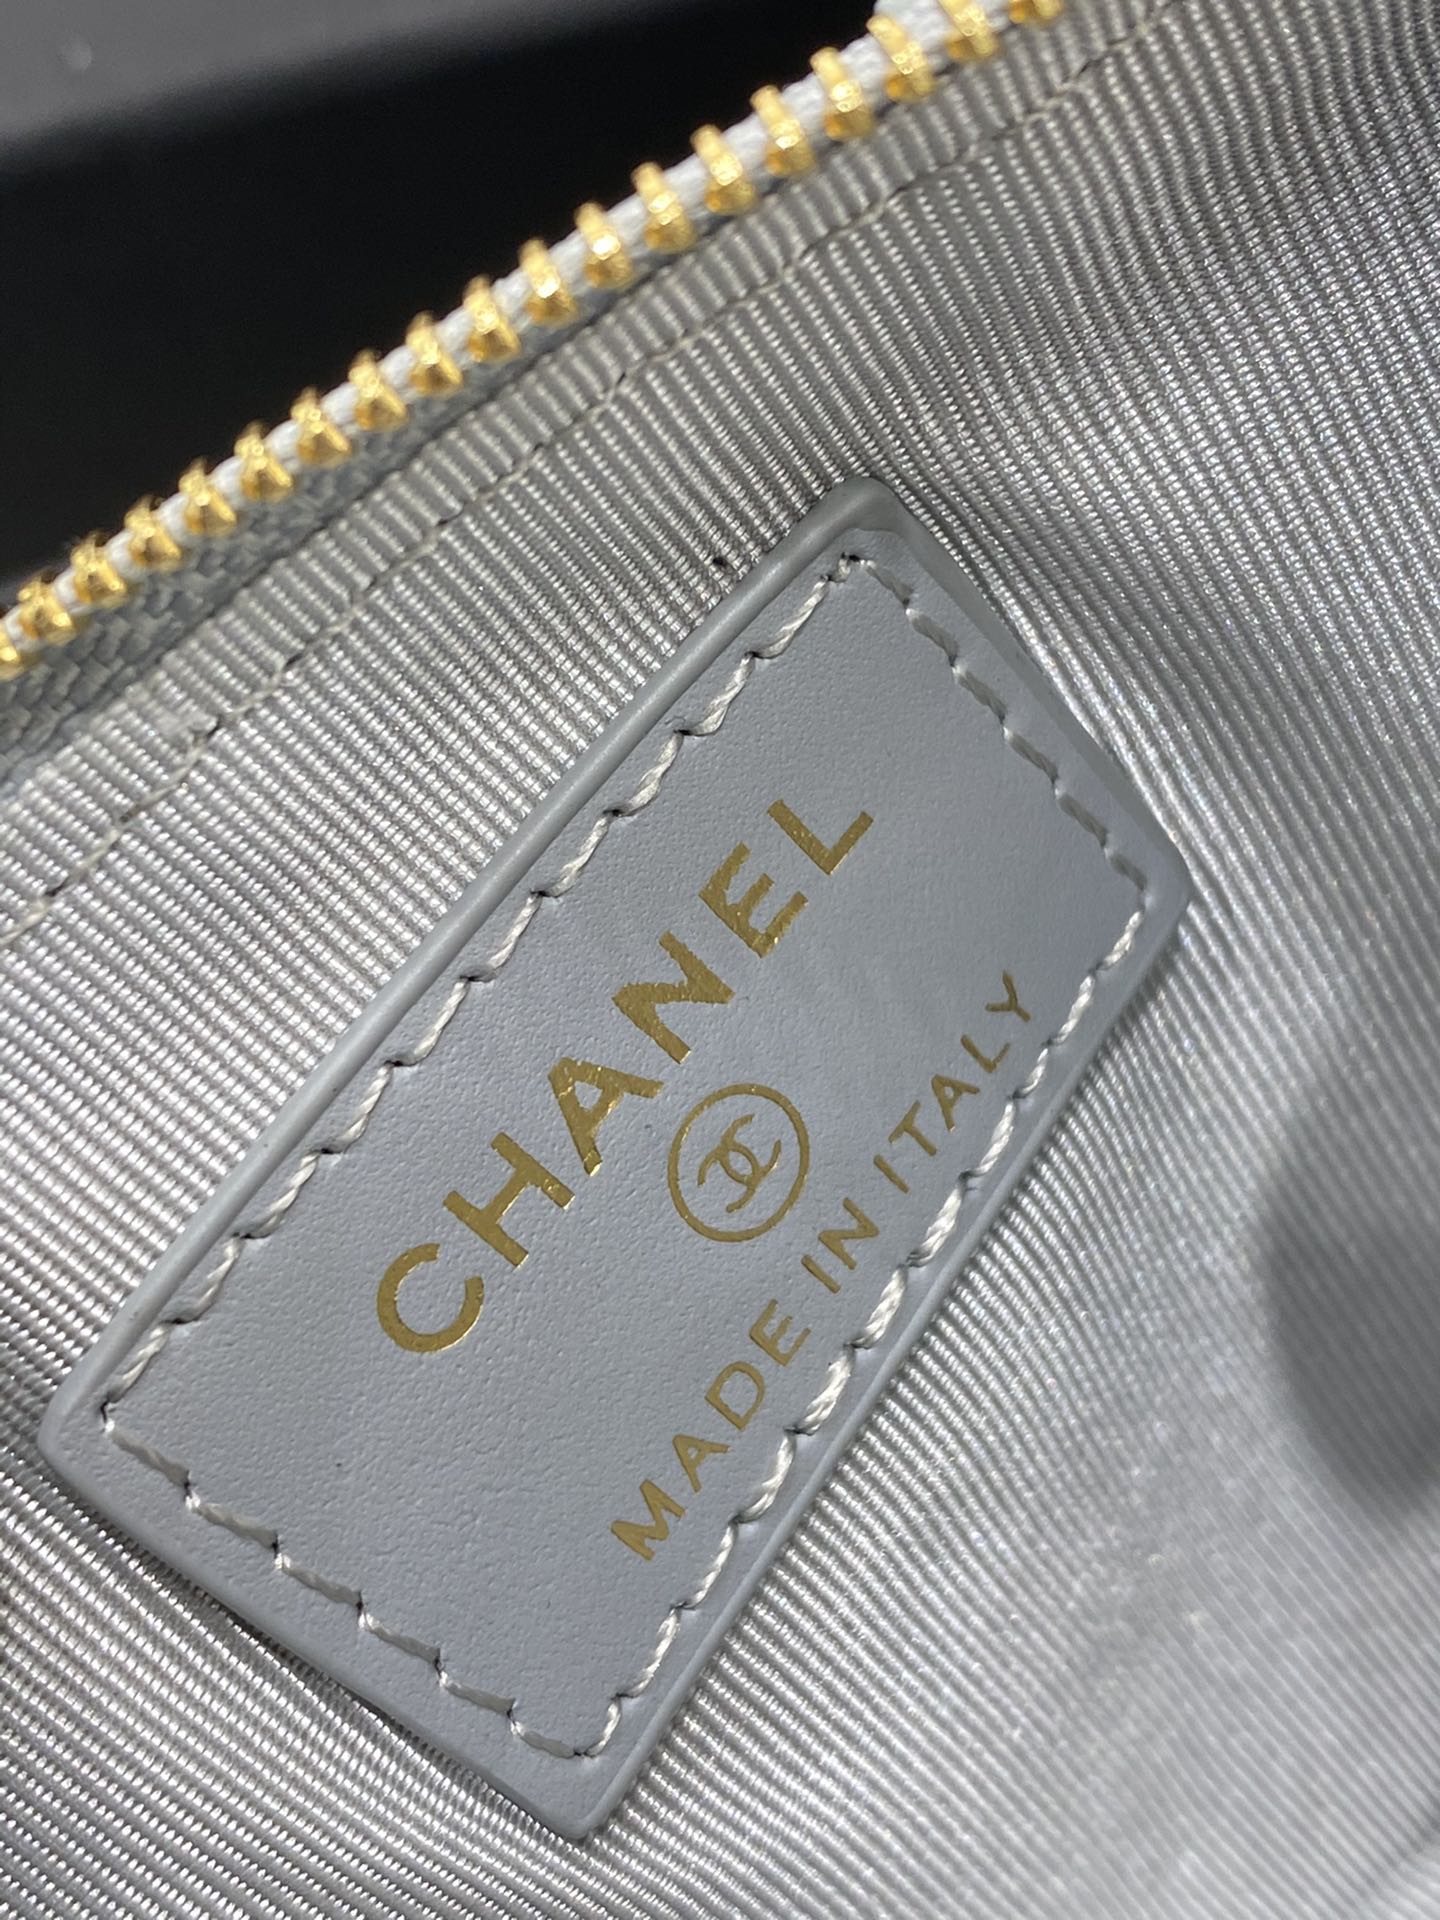 新款Chanel手机包 全新Logo设计 小球纹牛皮 5个卡位+一个拉链隔层+手机位 19.5*10*3